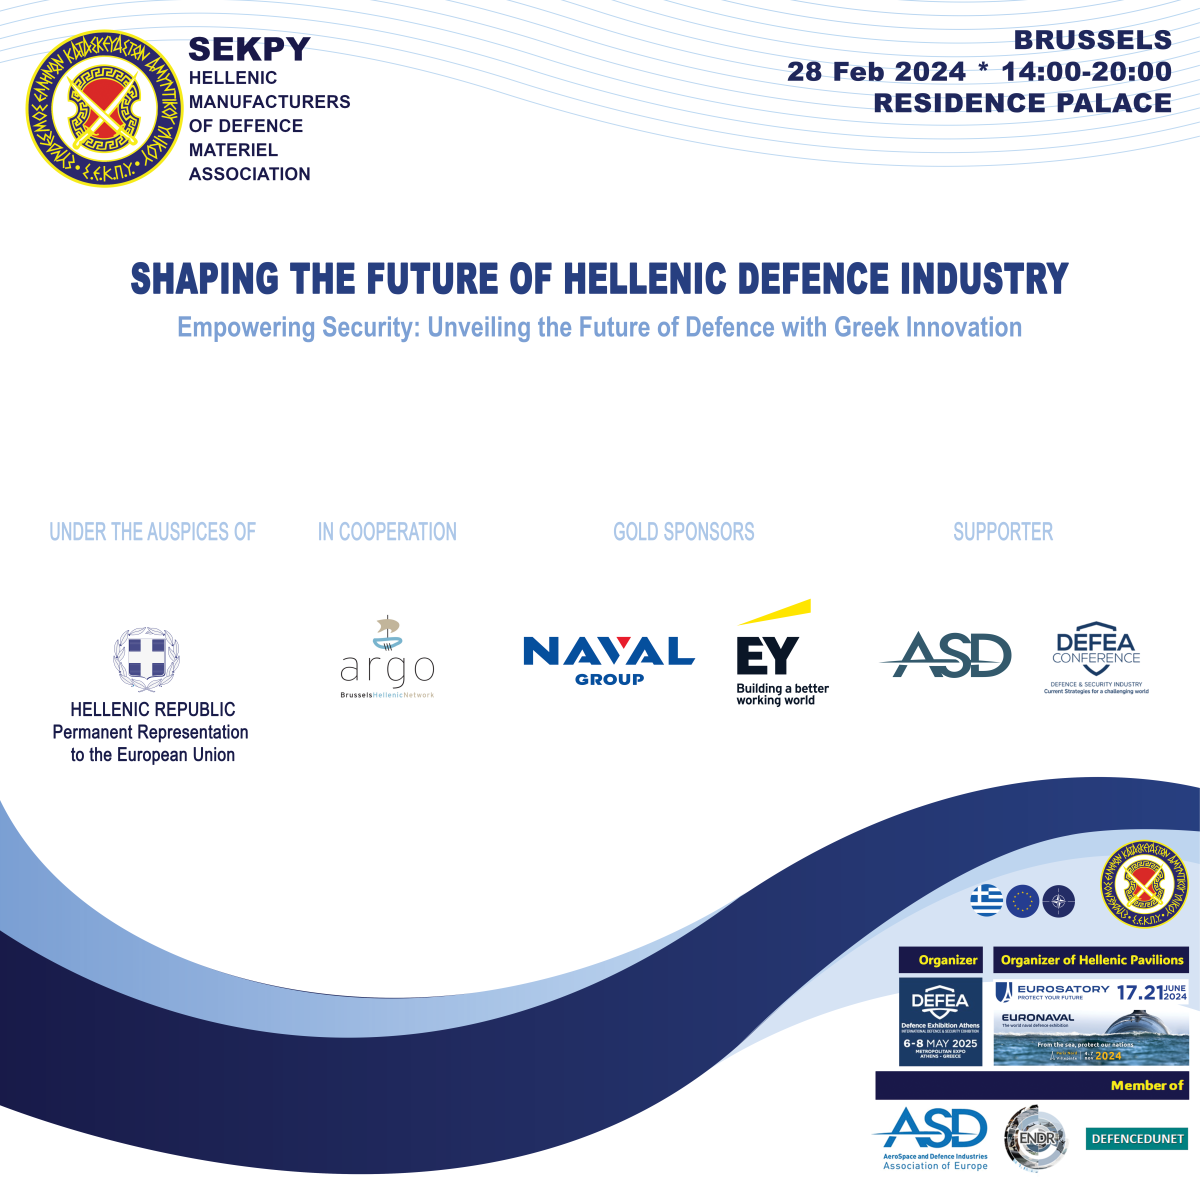 Ο ΣΕΚΠΥ φέρνει την Ελληνική Αμυντική Βιομηχανία στην καρδιά της Ευρώπης